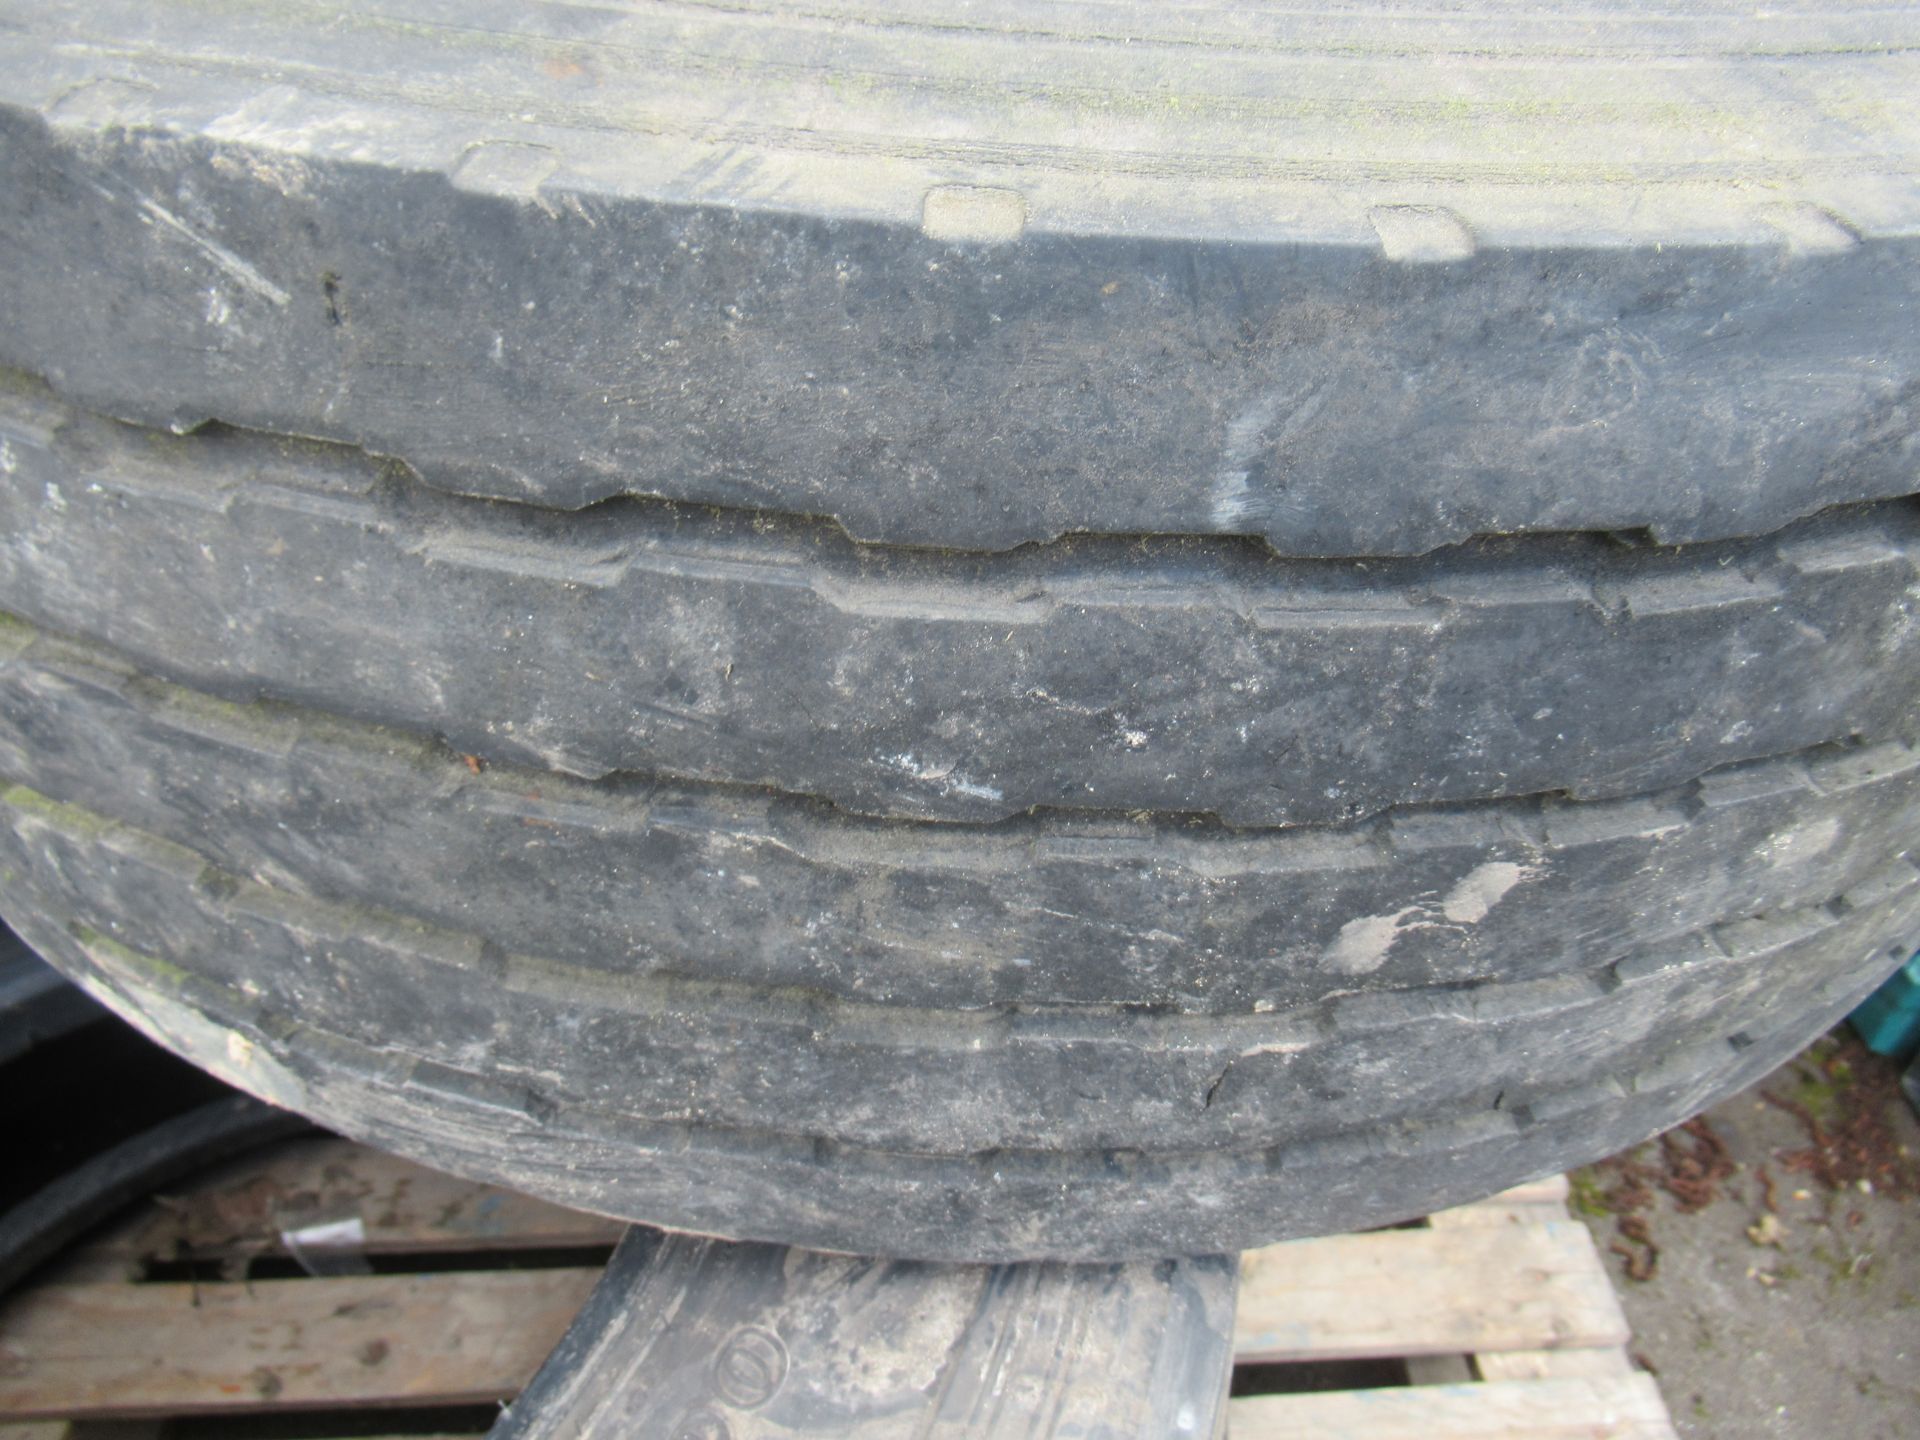 5x Partworn Tyres ( 285/70R/19.5, 245/70R/19.5, 245/70R/19.5, 285/70R/19.5, 245/70R/19.5) - Image 3 of 7